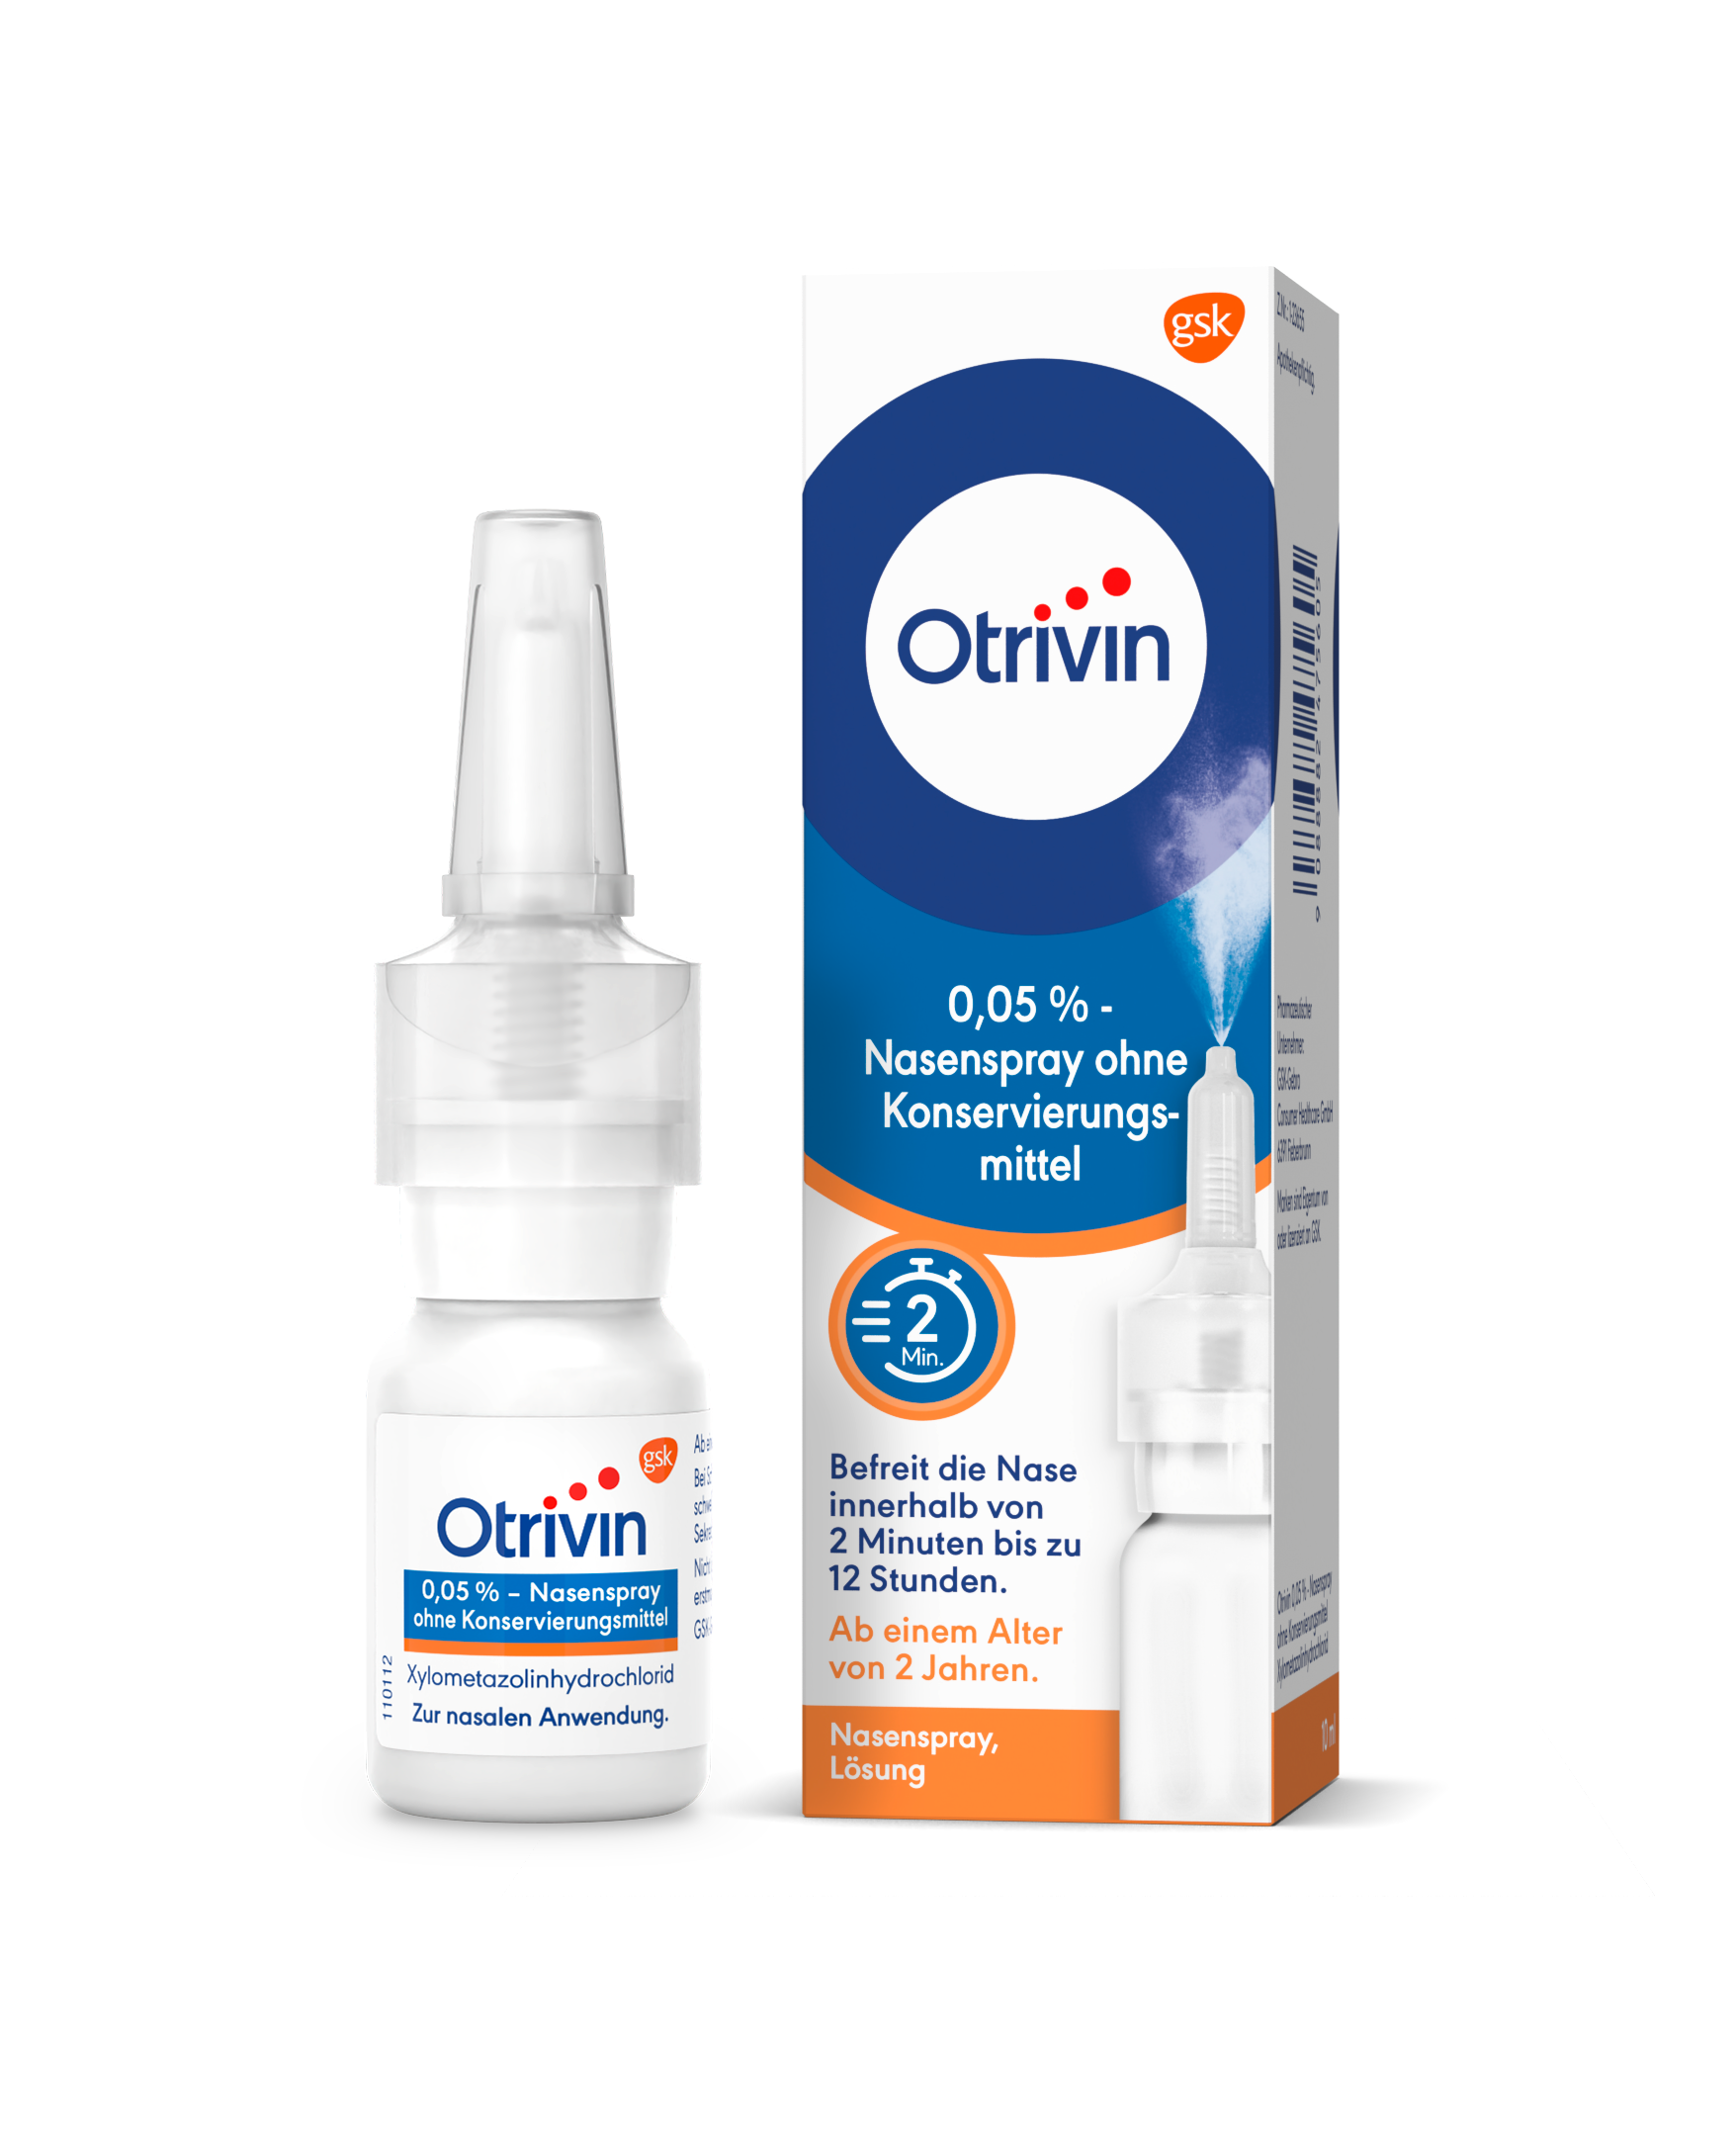 Otrivin 0,05% - Nasenspray ohne Konservierungsmittel